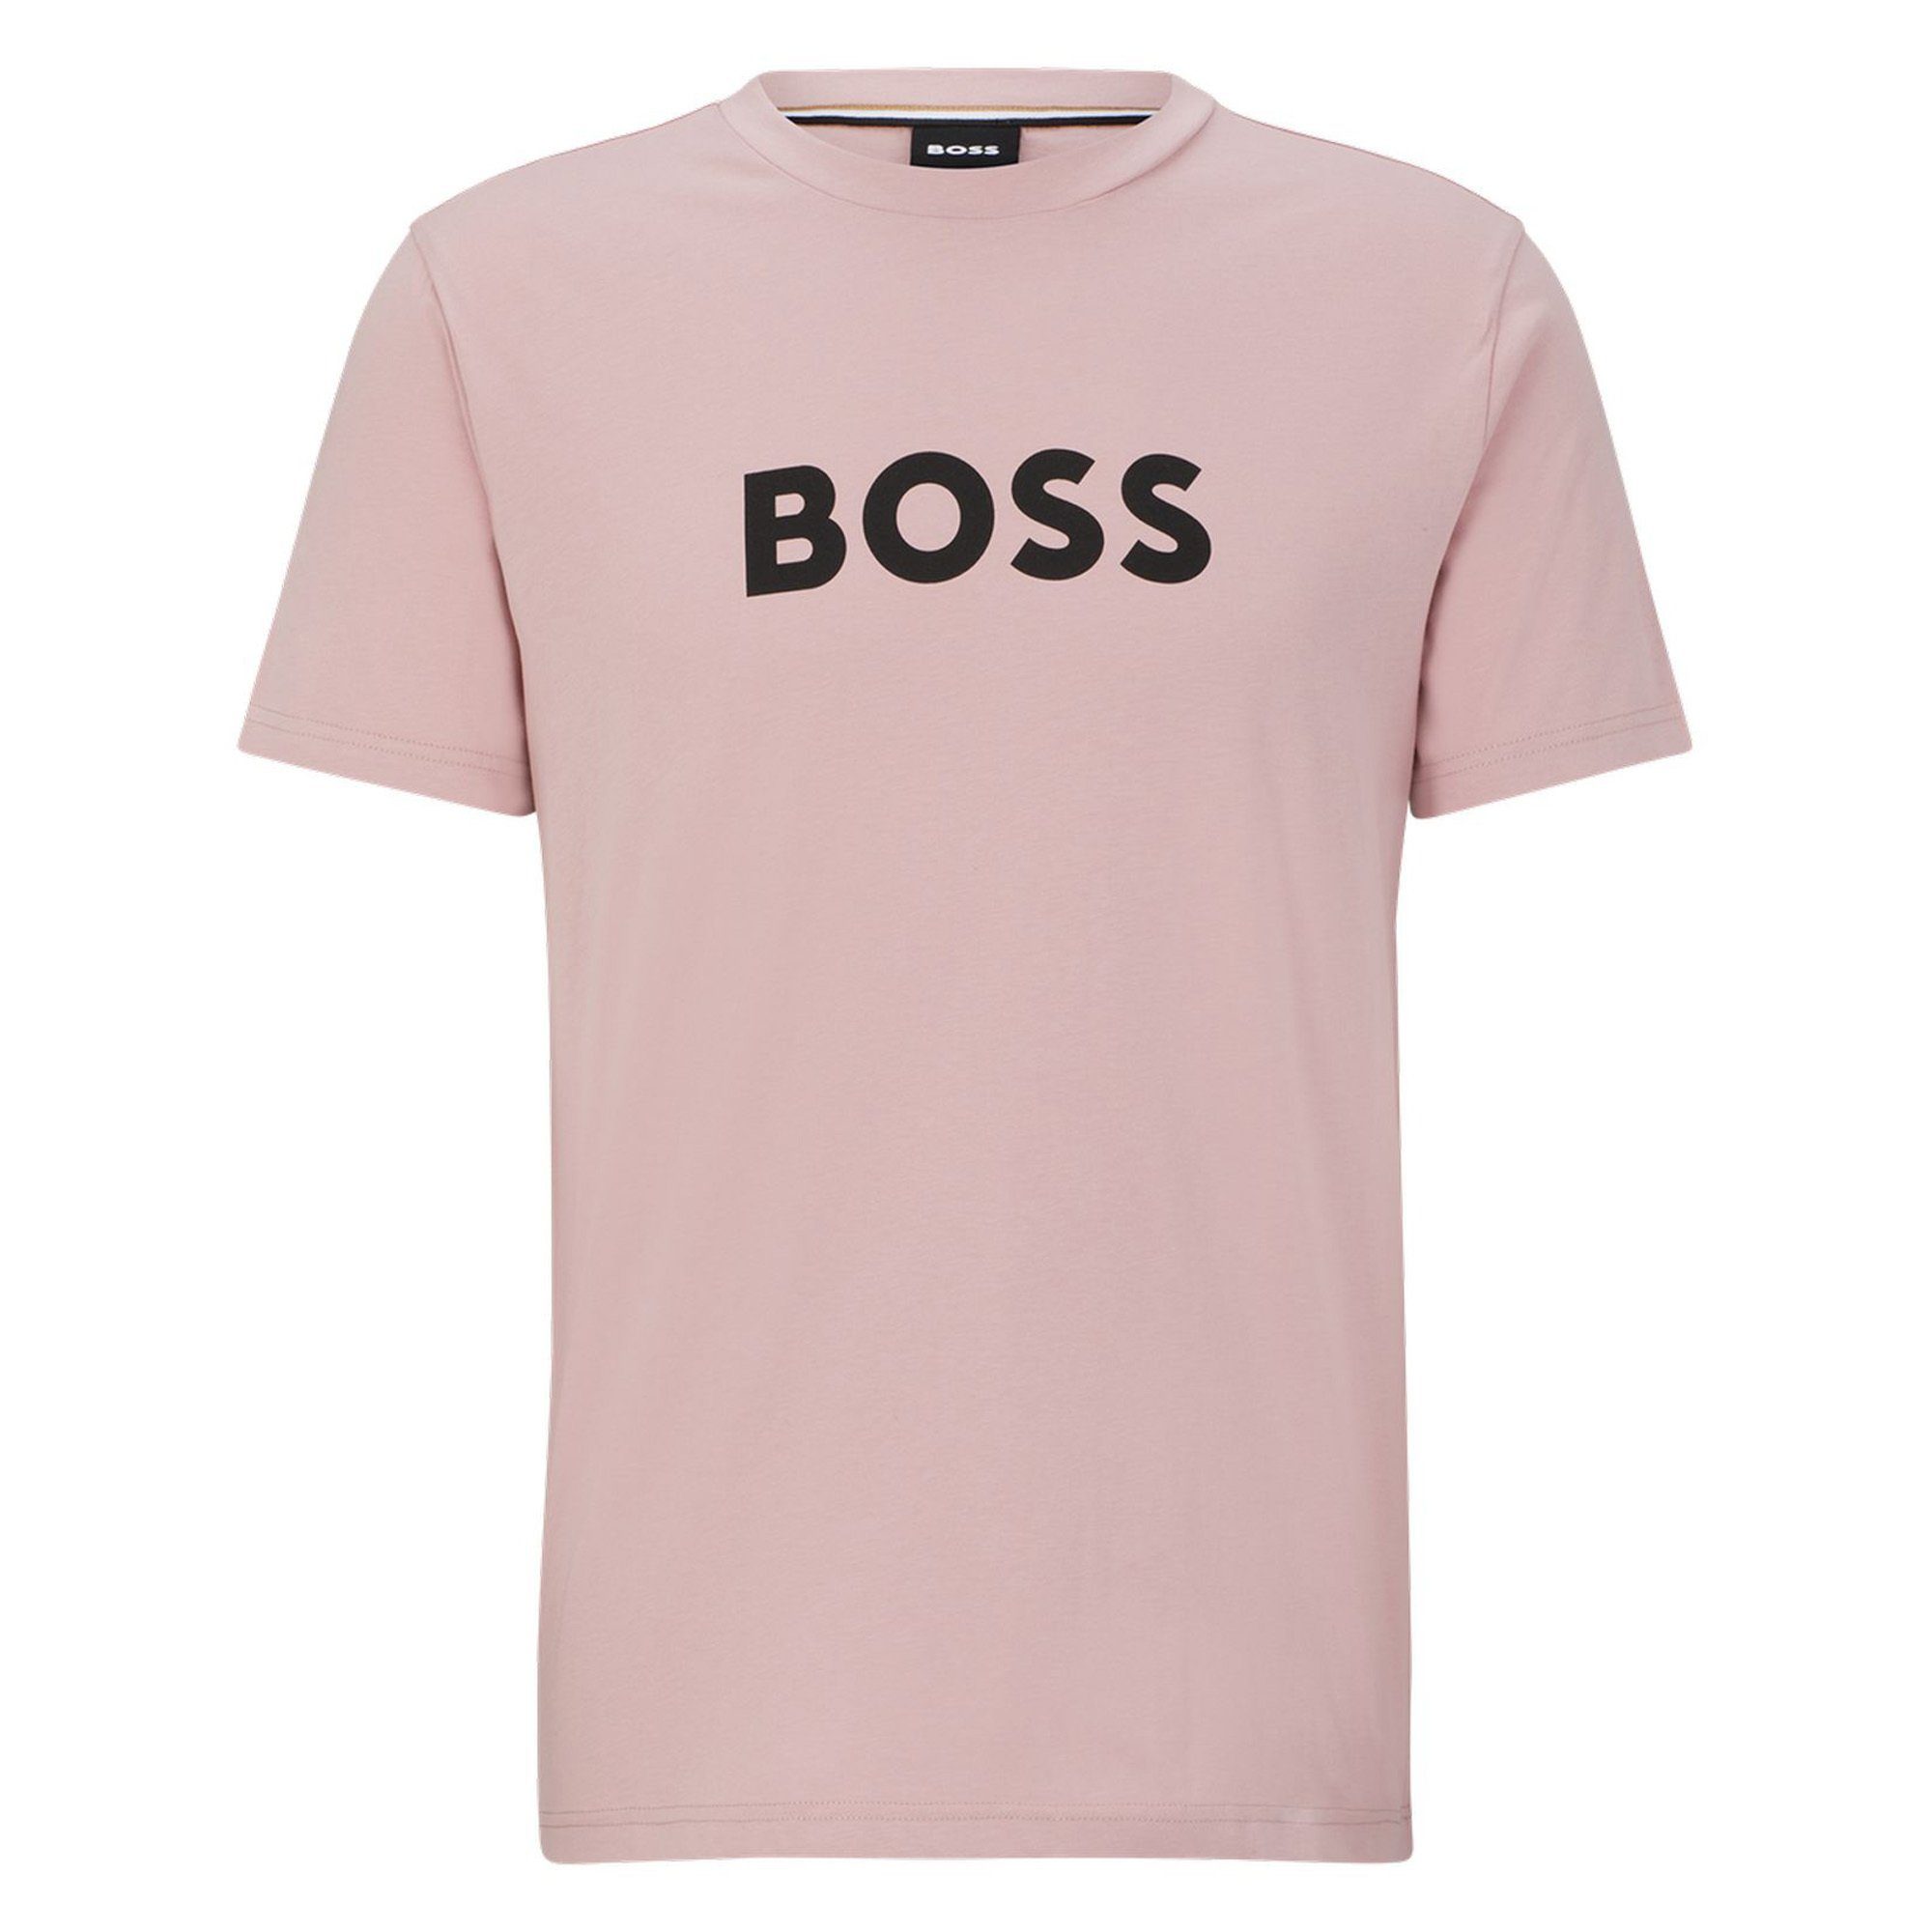 BOSS T-Shirt Herren T-Shirt - RN, T-Shirt Kurzarm Rosa Rundhals